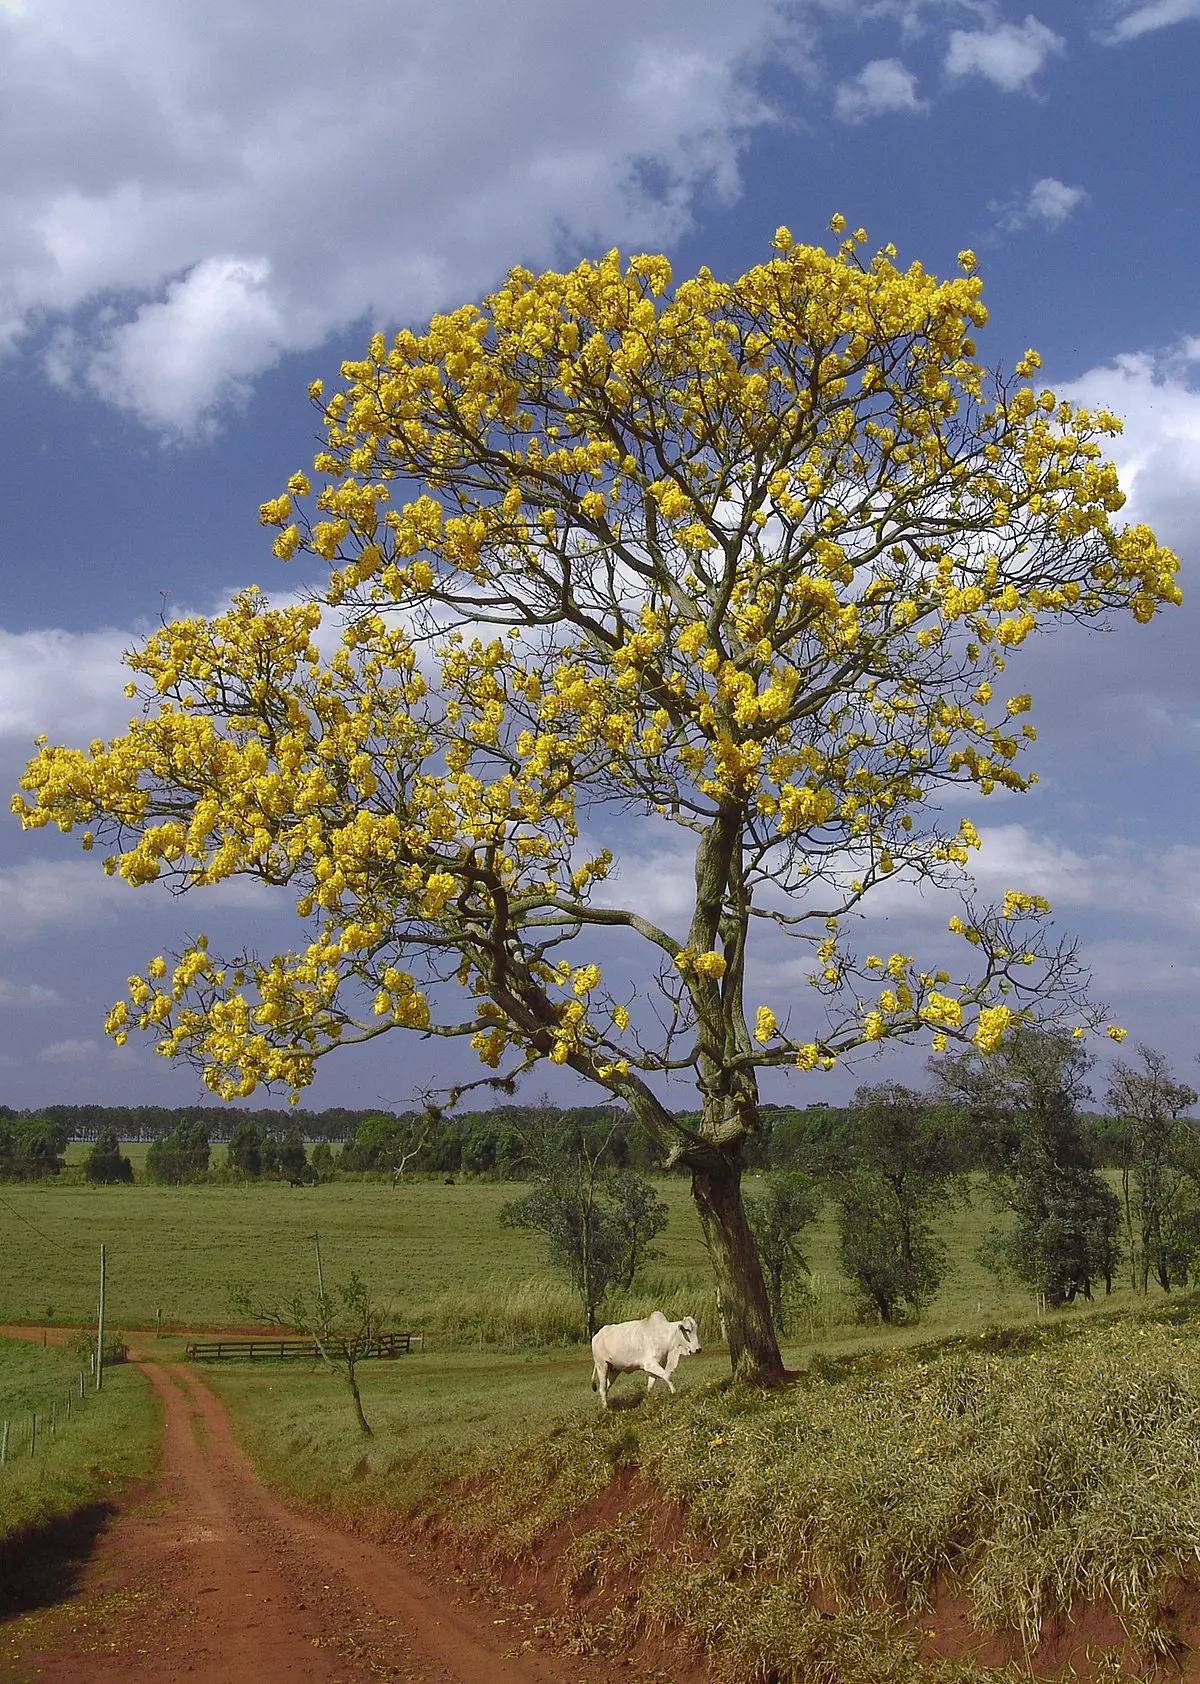 arboles con flores amarillas - Cómo se llama el árbol que se parece al Araguaney